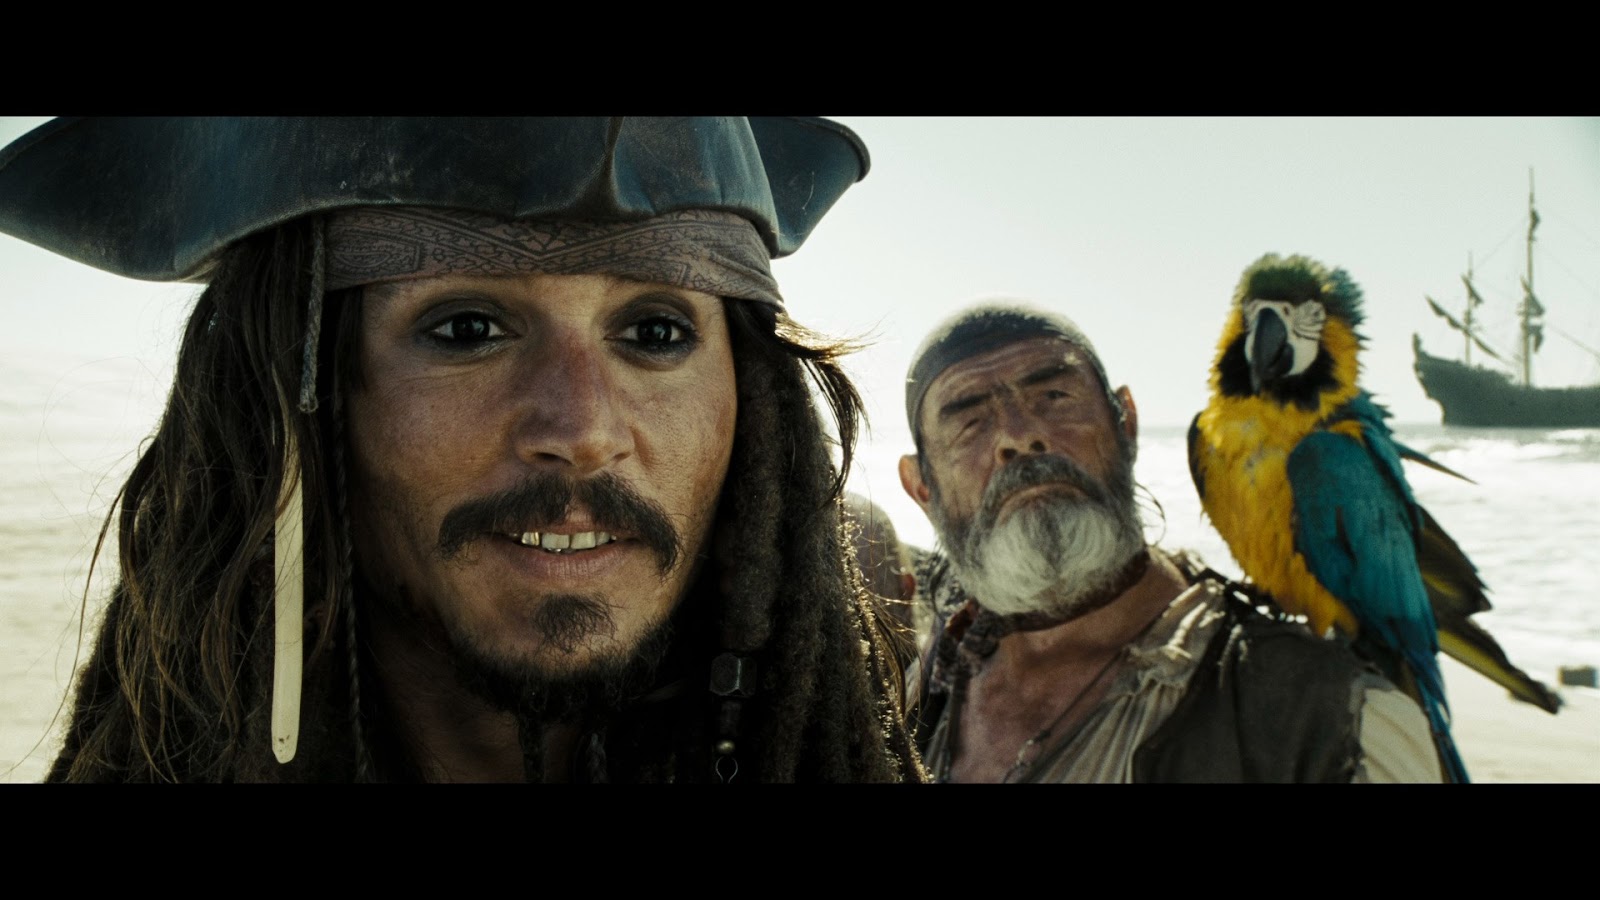 Piratas del Caribe: En el fin del mundo (2007) 1080p BRrip Latino